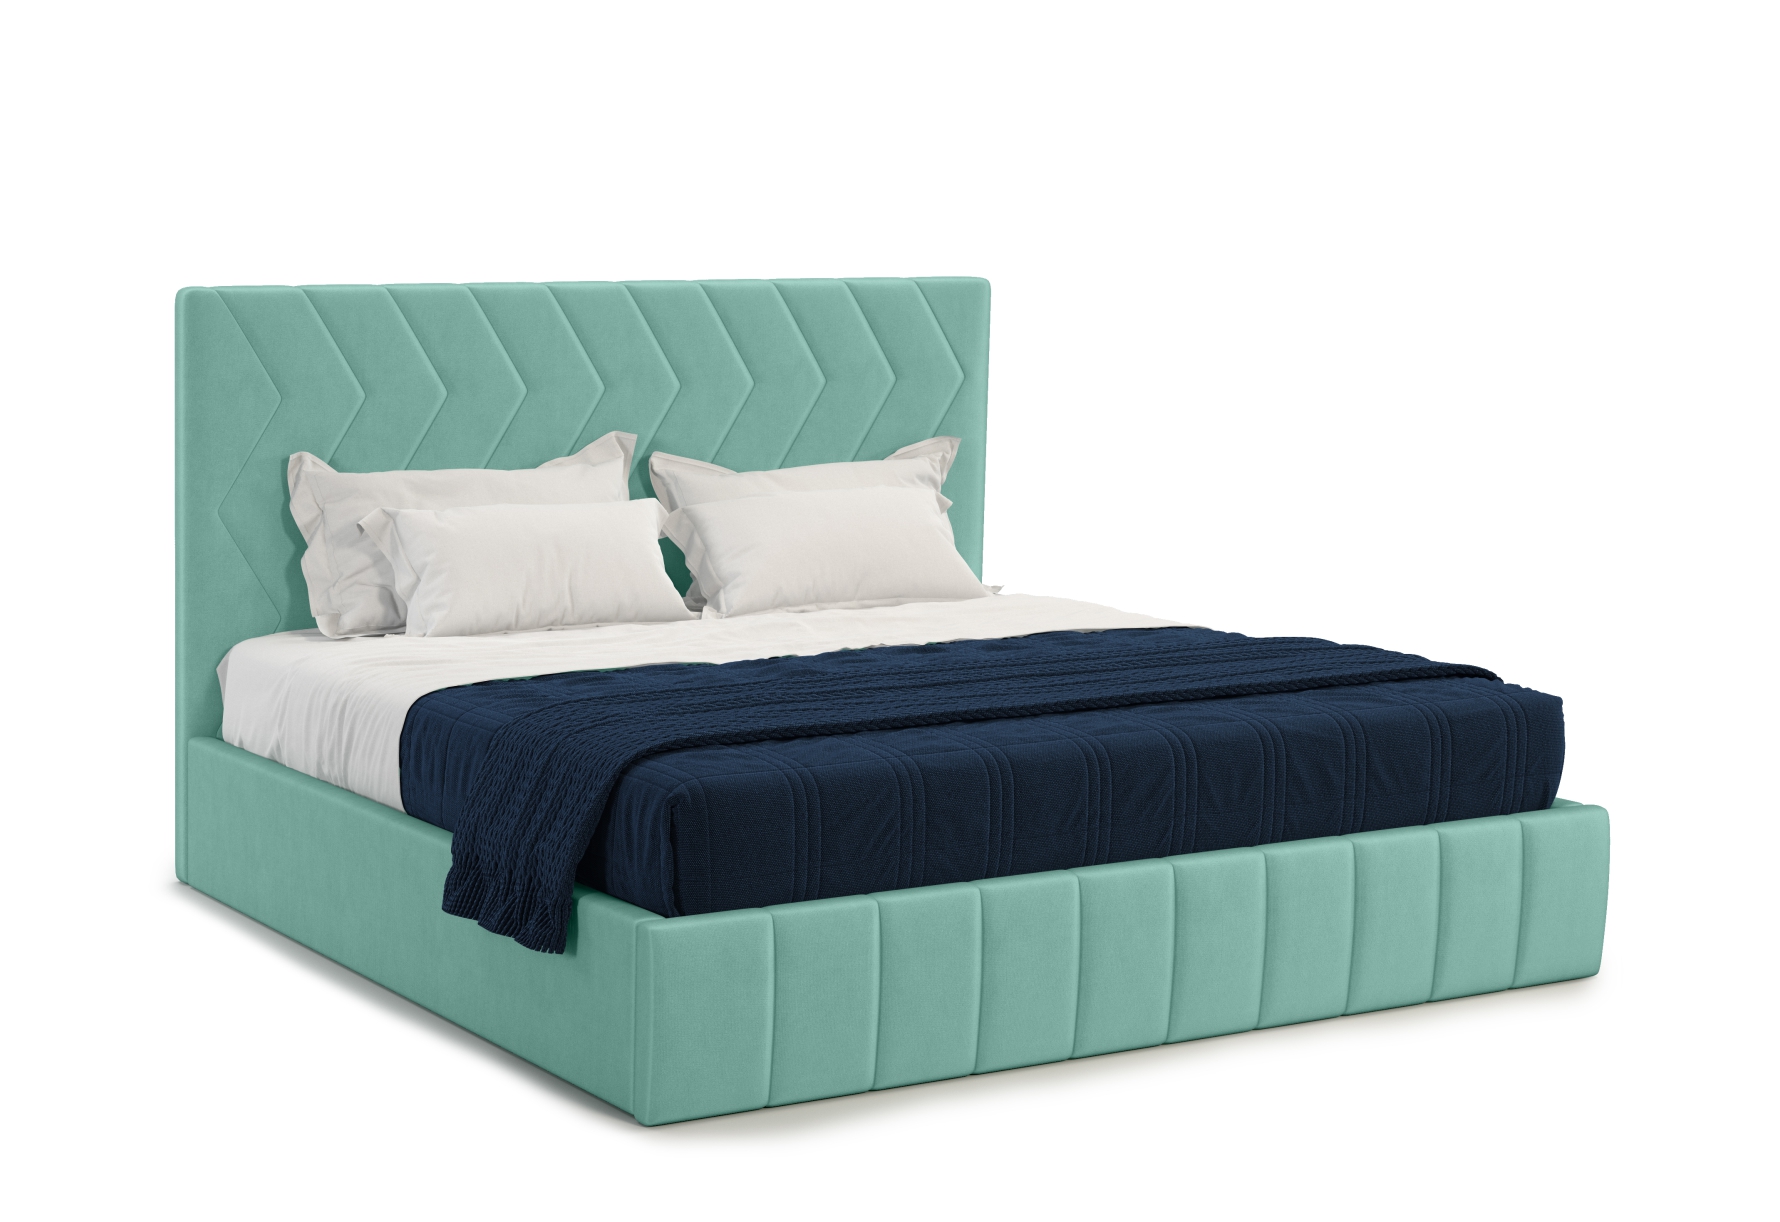 Мягкая кровать Грейс 180*200 (подъемник), цвет bingo mint - фото 1